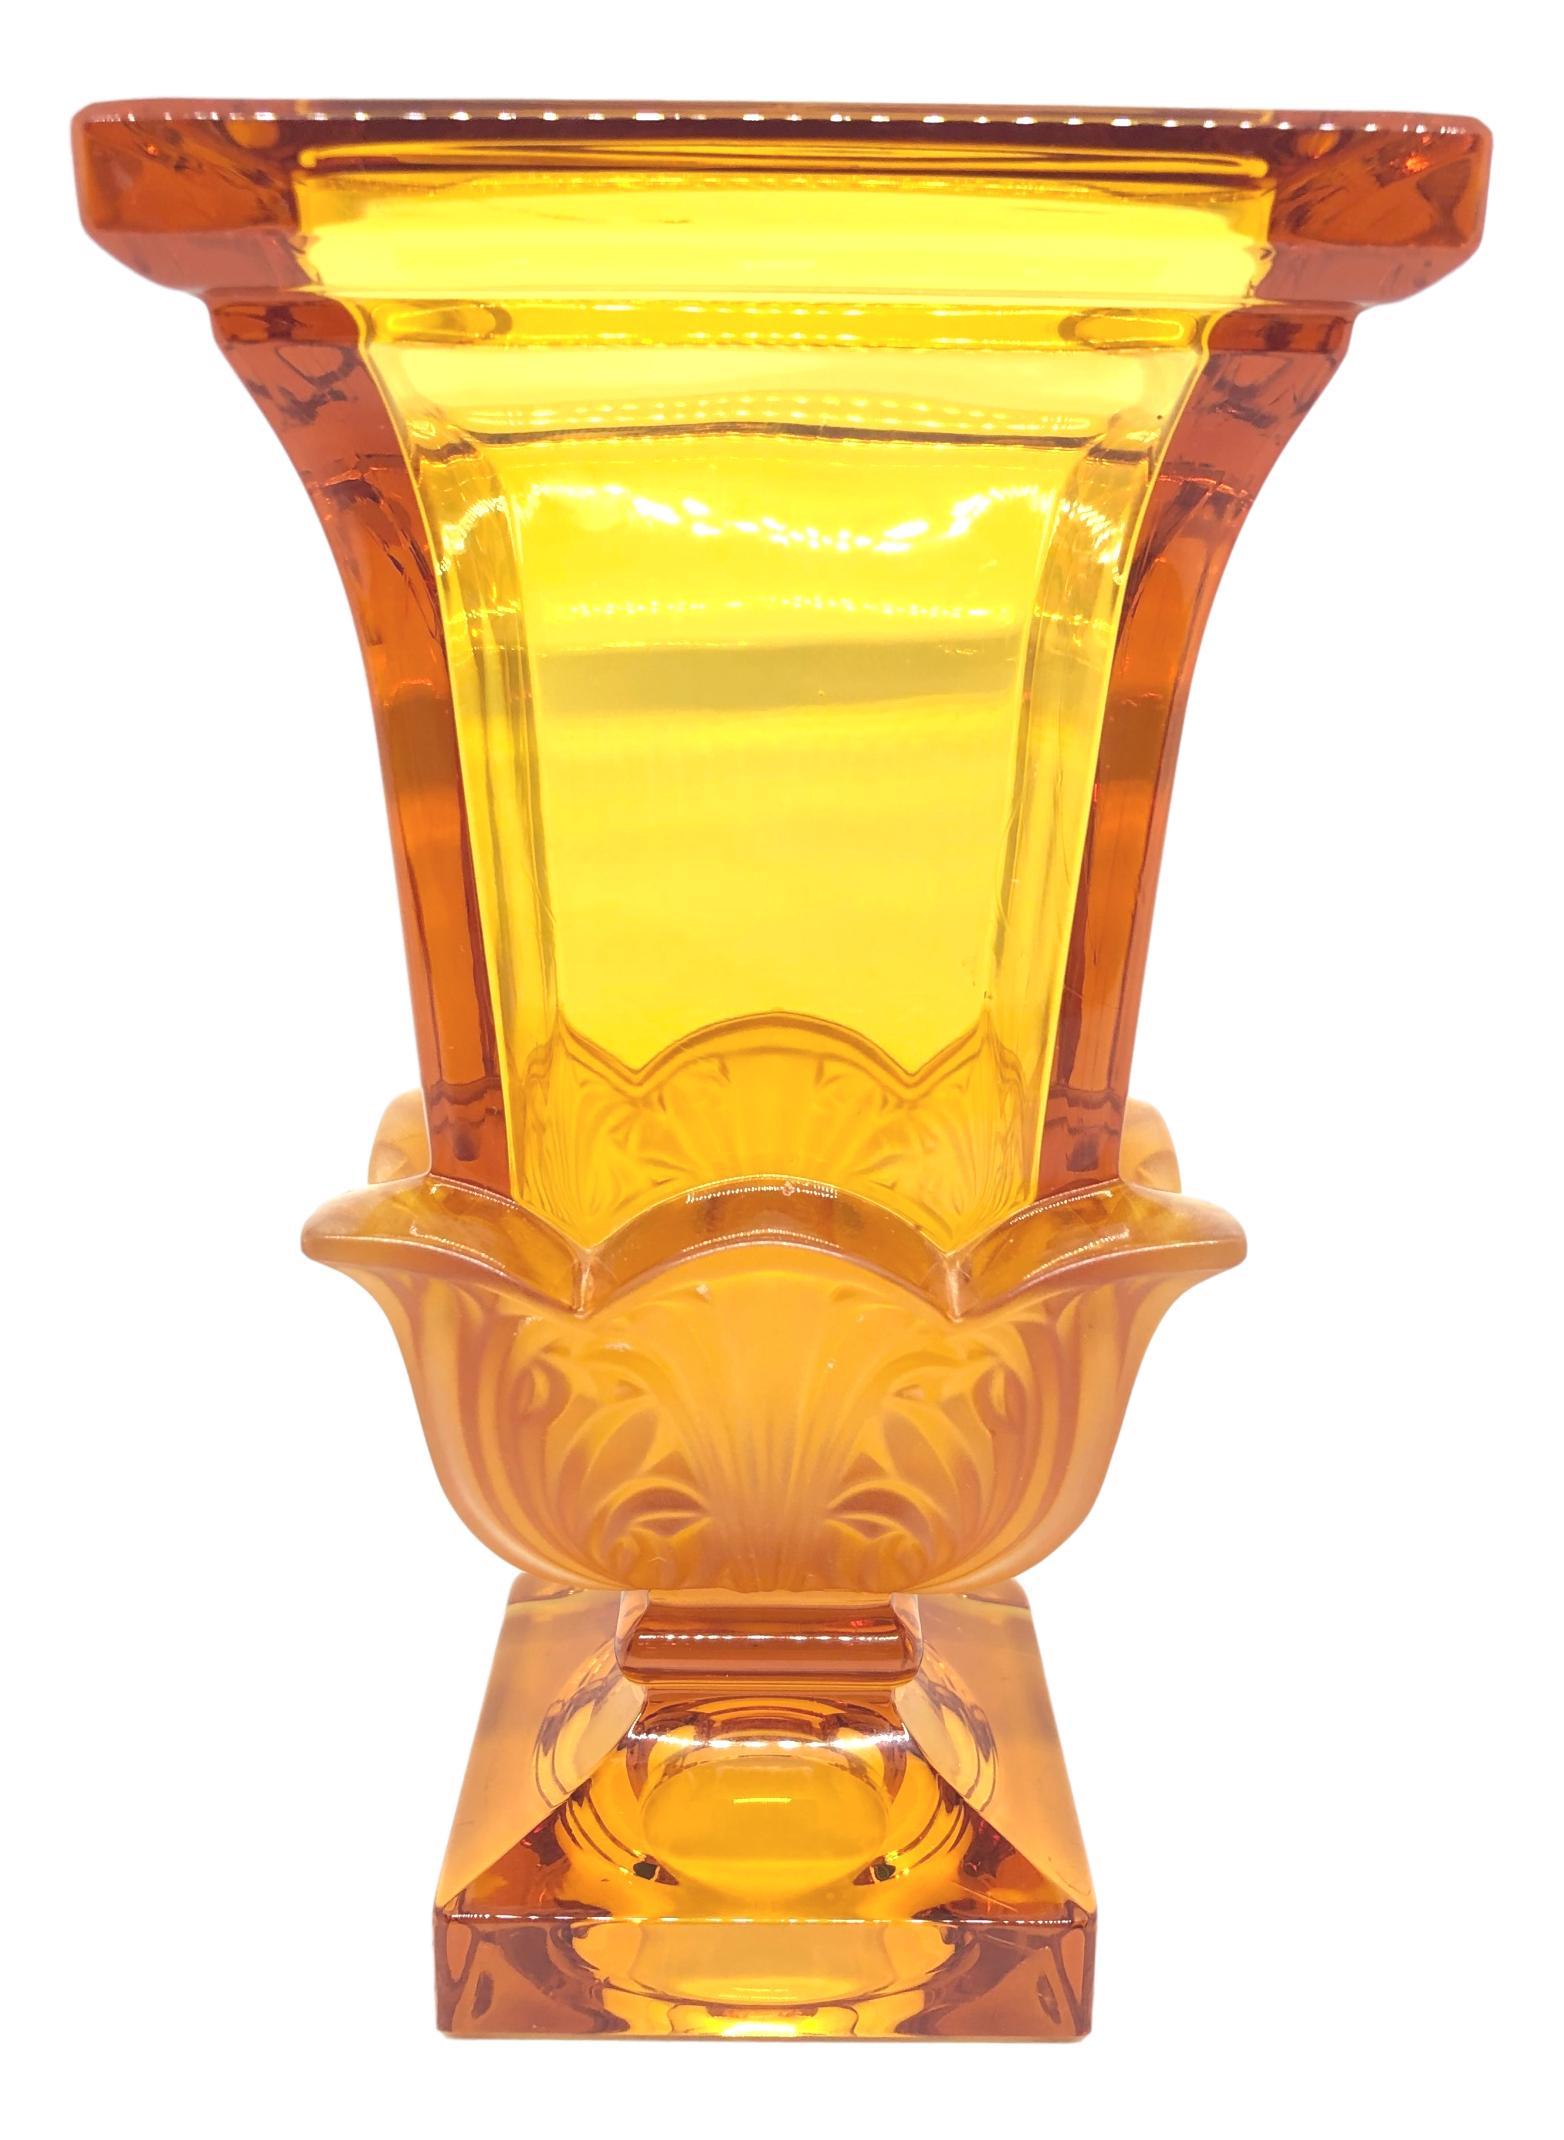 Schöne Vase aus böhmischem Kristallglas. Die Kreation wird der Josephinenhütte:: einem Glasunternehmen von Moser:: zugeschrieben. Ein schönes Kunstwerk für jeden Raum.